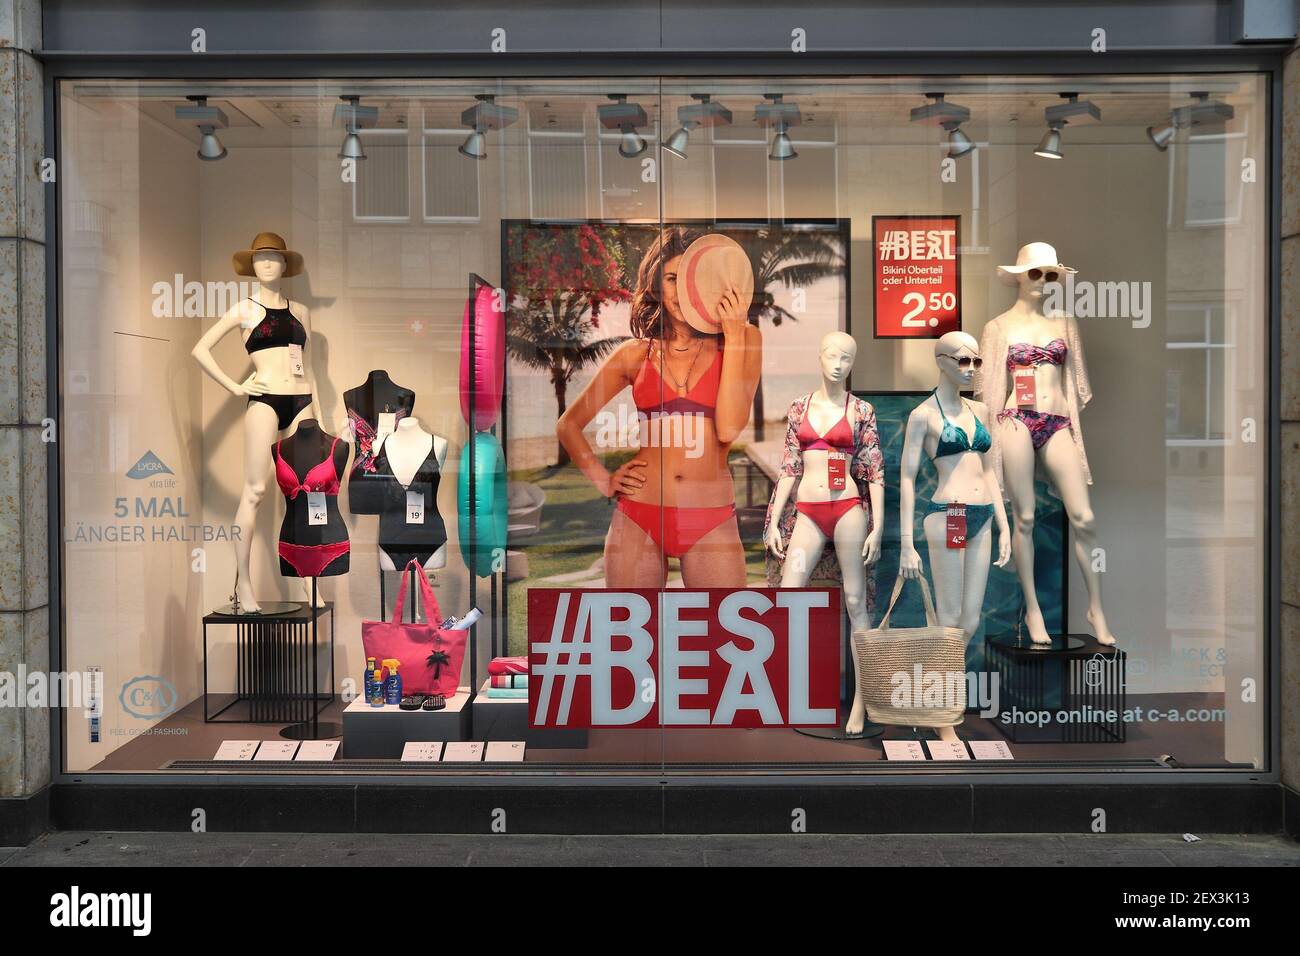 DRESDEN, ALEMANIA - 10 DE de 2018: Escaparate de la tienda de ropa de C&A en Dresden, Alemania. C&A es una cadena de tiendas de ropa belga-alemana-holandesa Fotografía de stock - Alamy